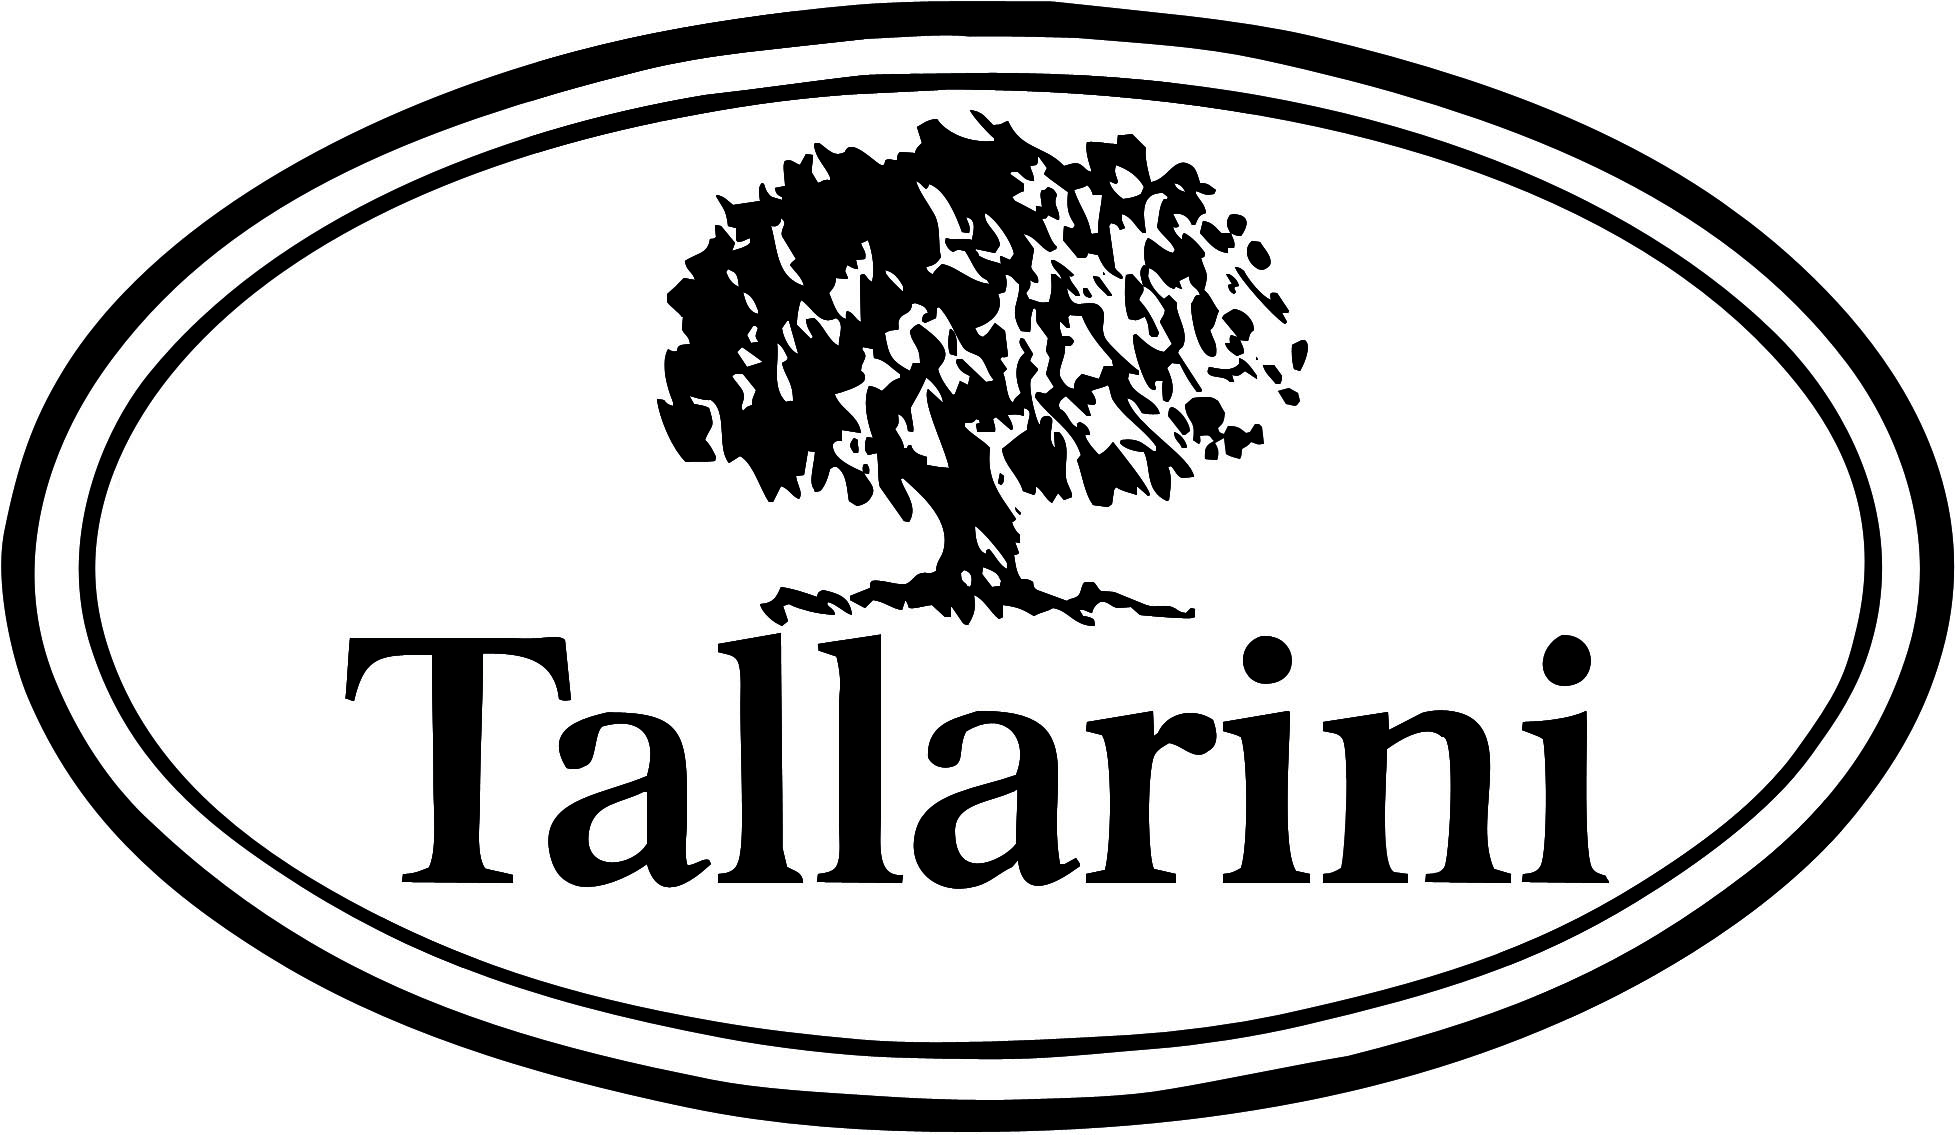 TALLARINI WINES